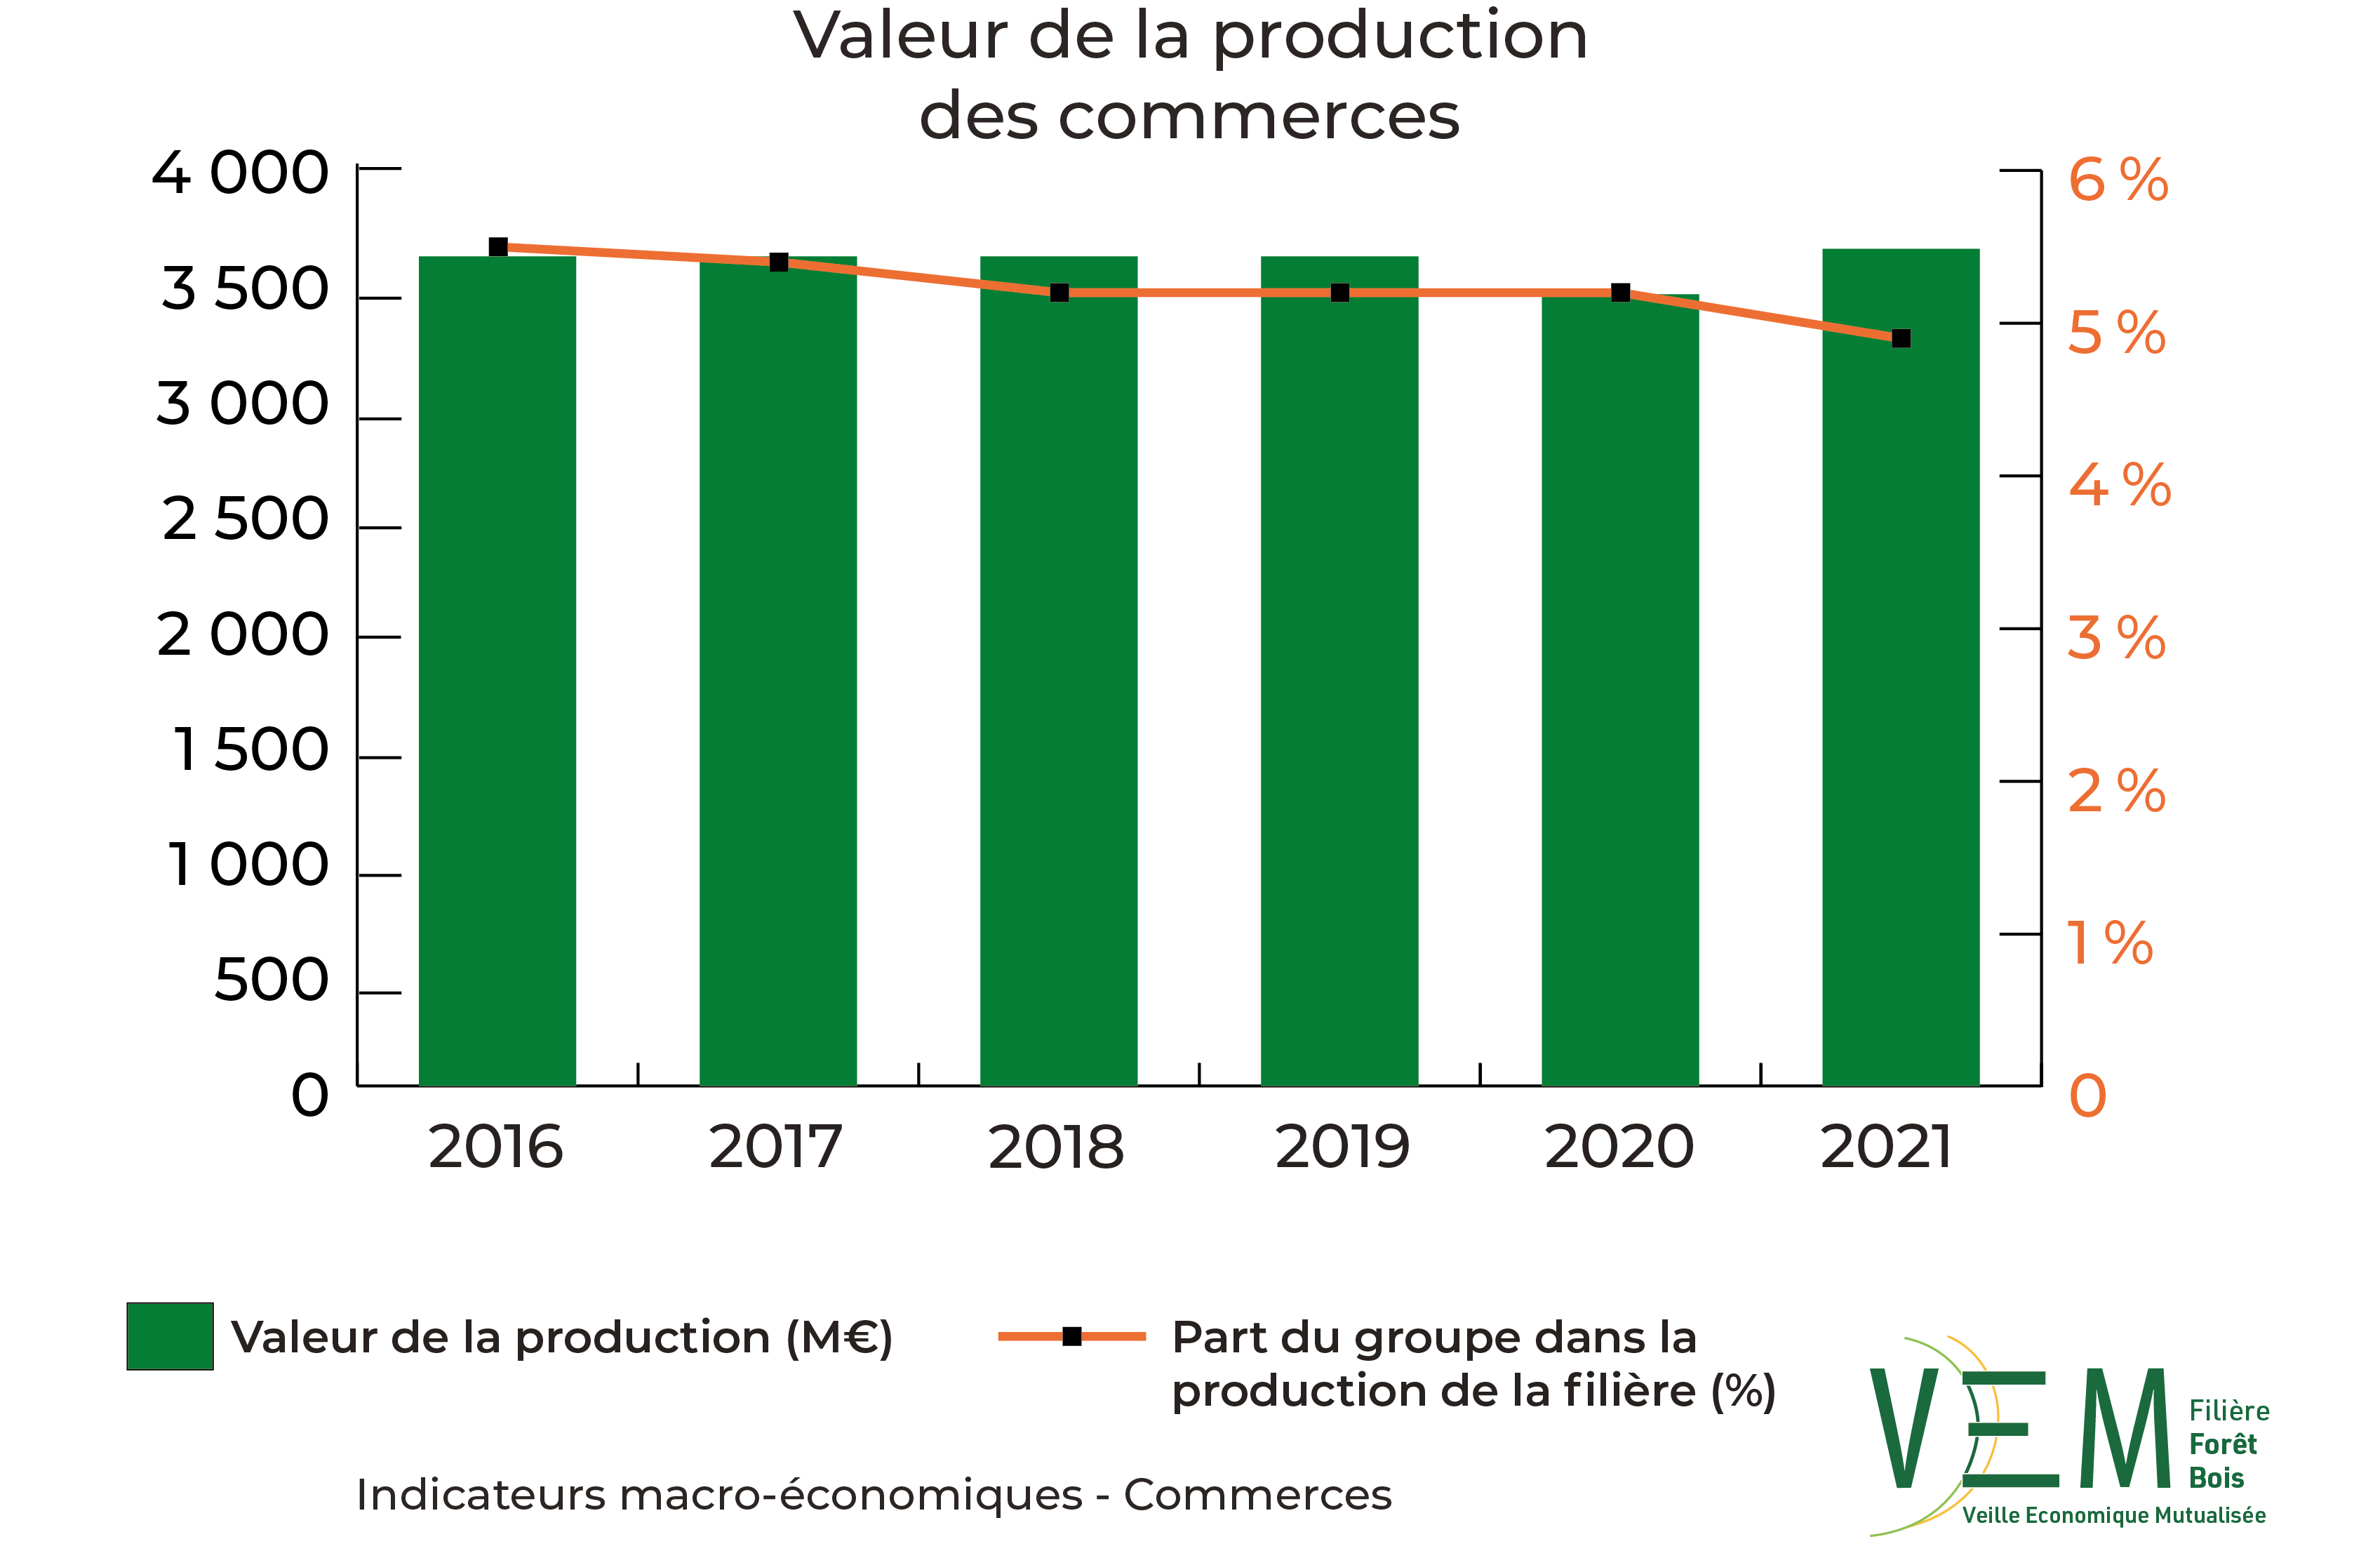 2023 IME Valeur production des commerces Meuros